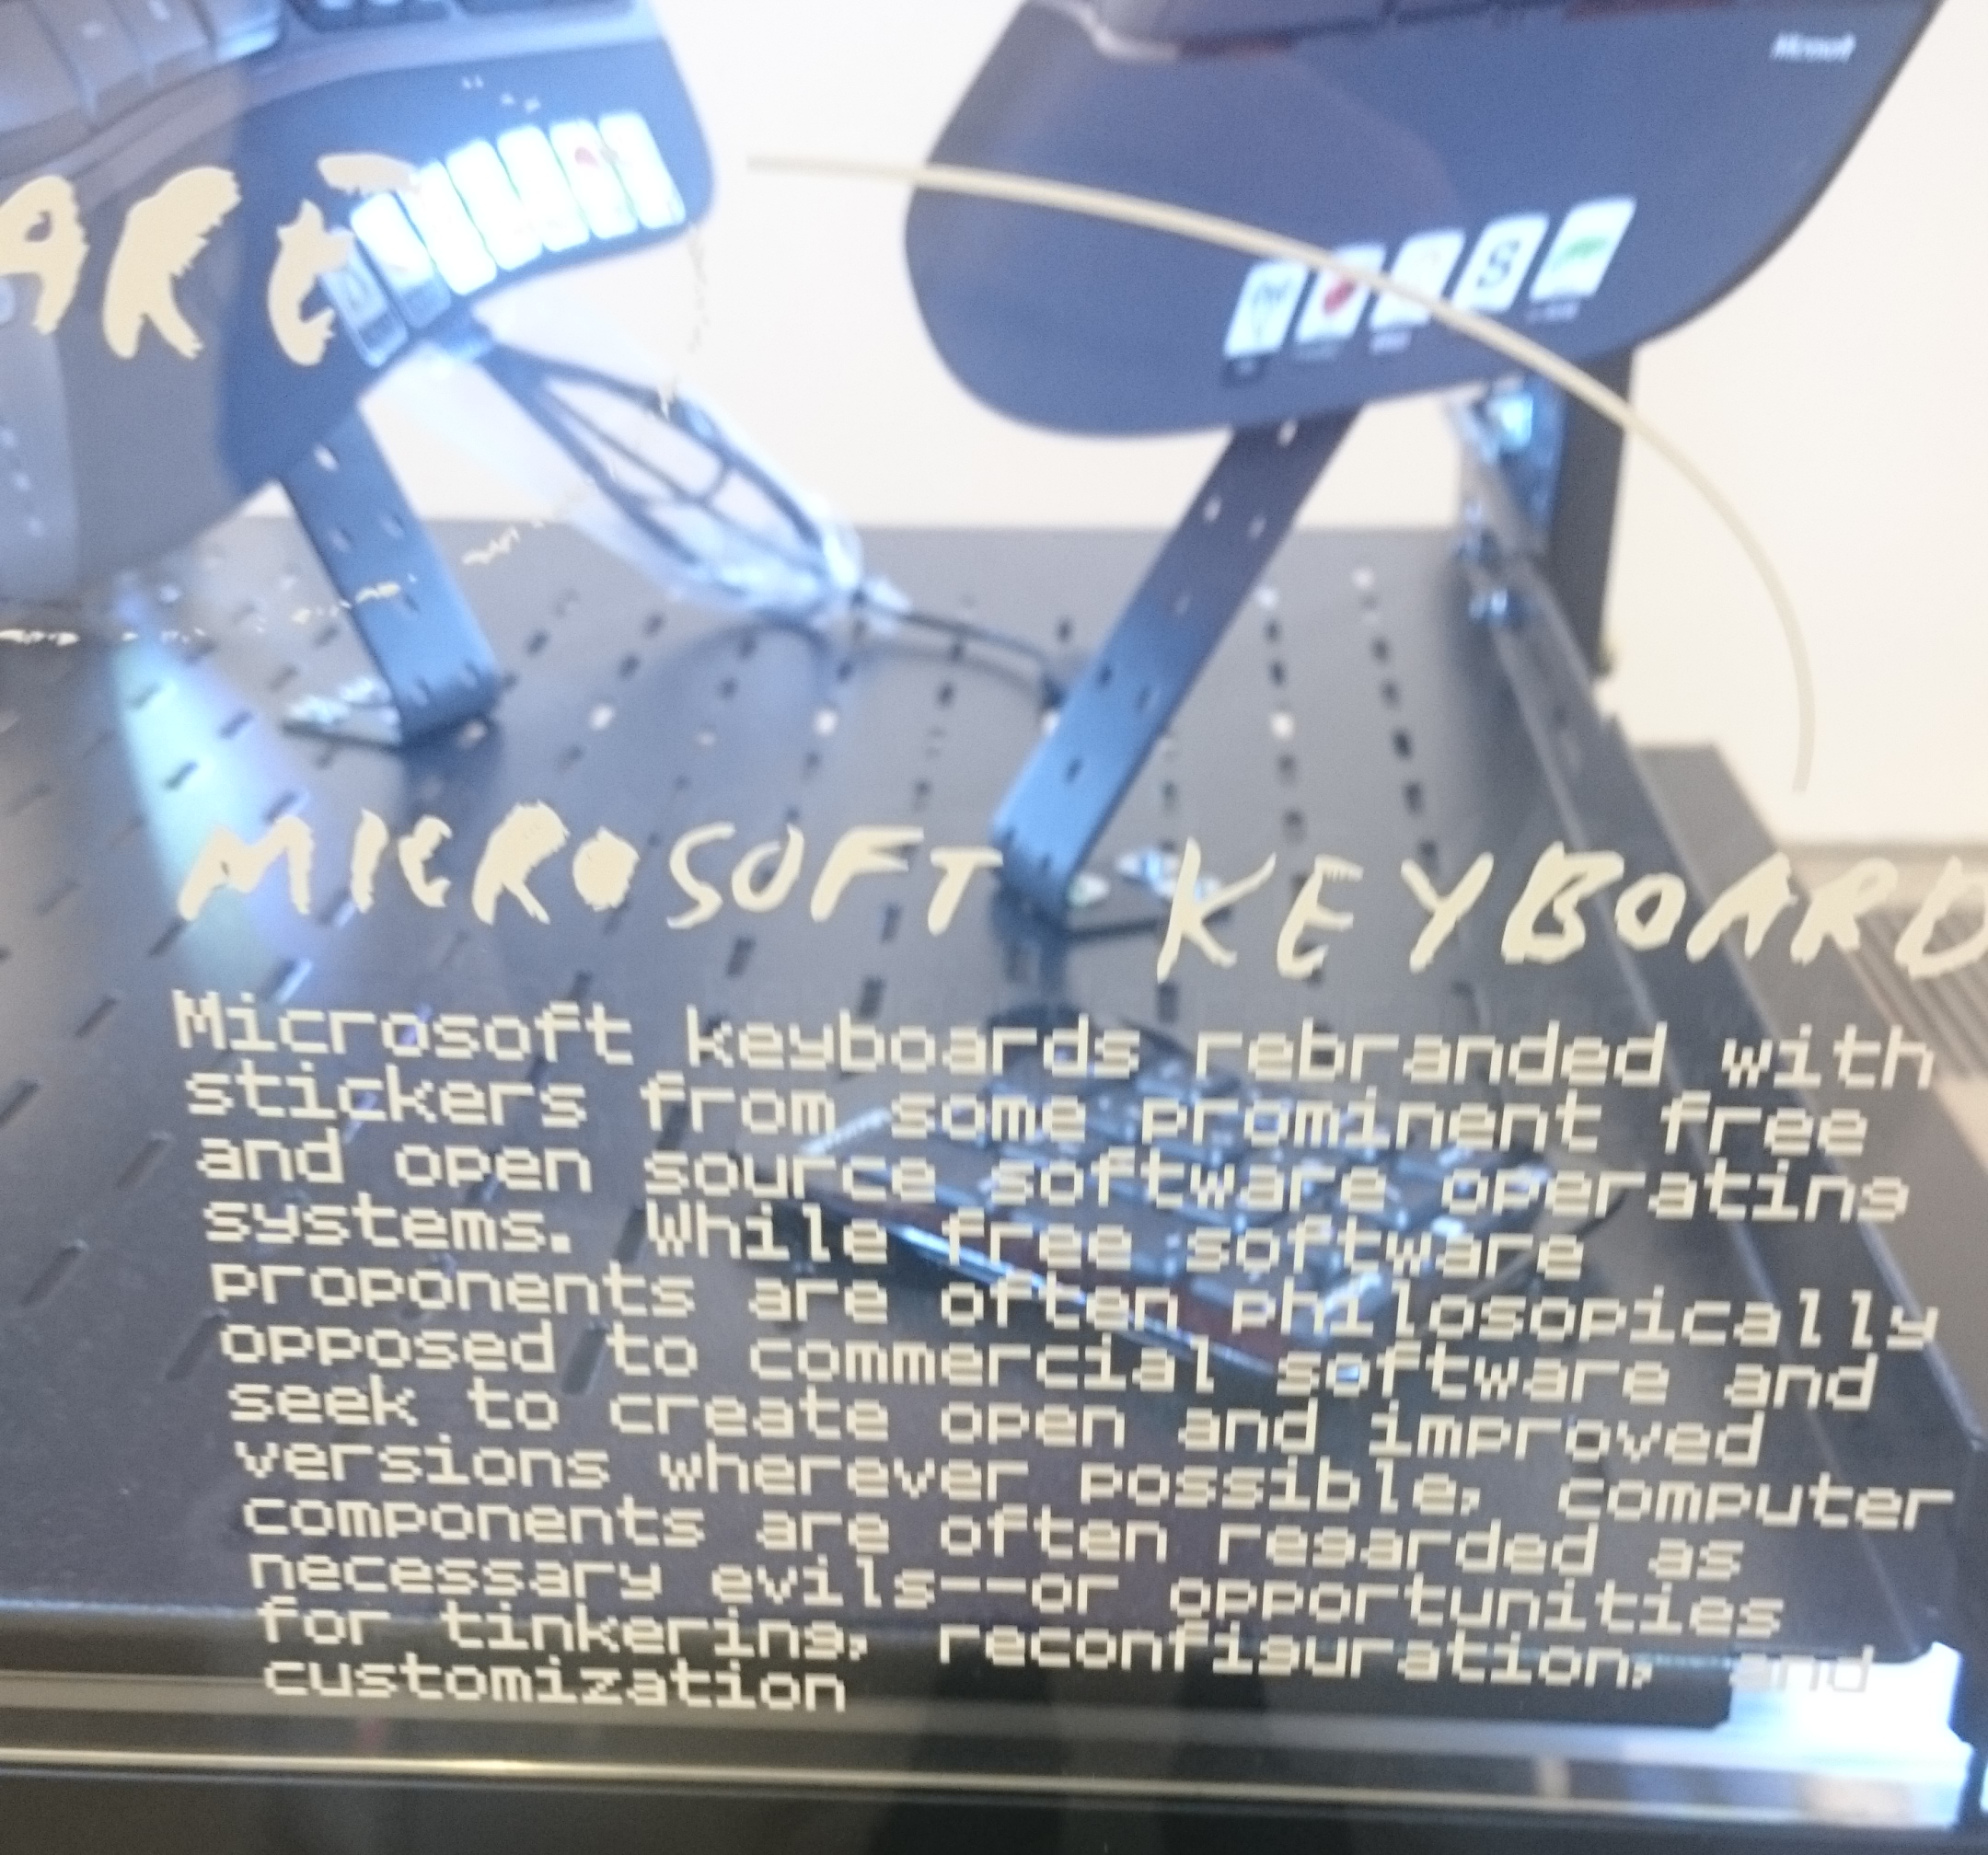 Open Source Stickers on Microsoft Keyboards - Art Exhibit - London